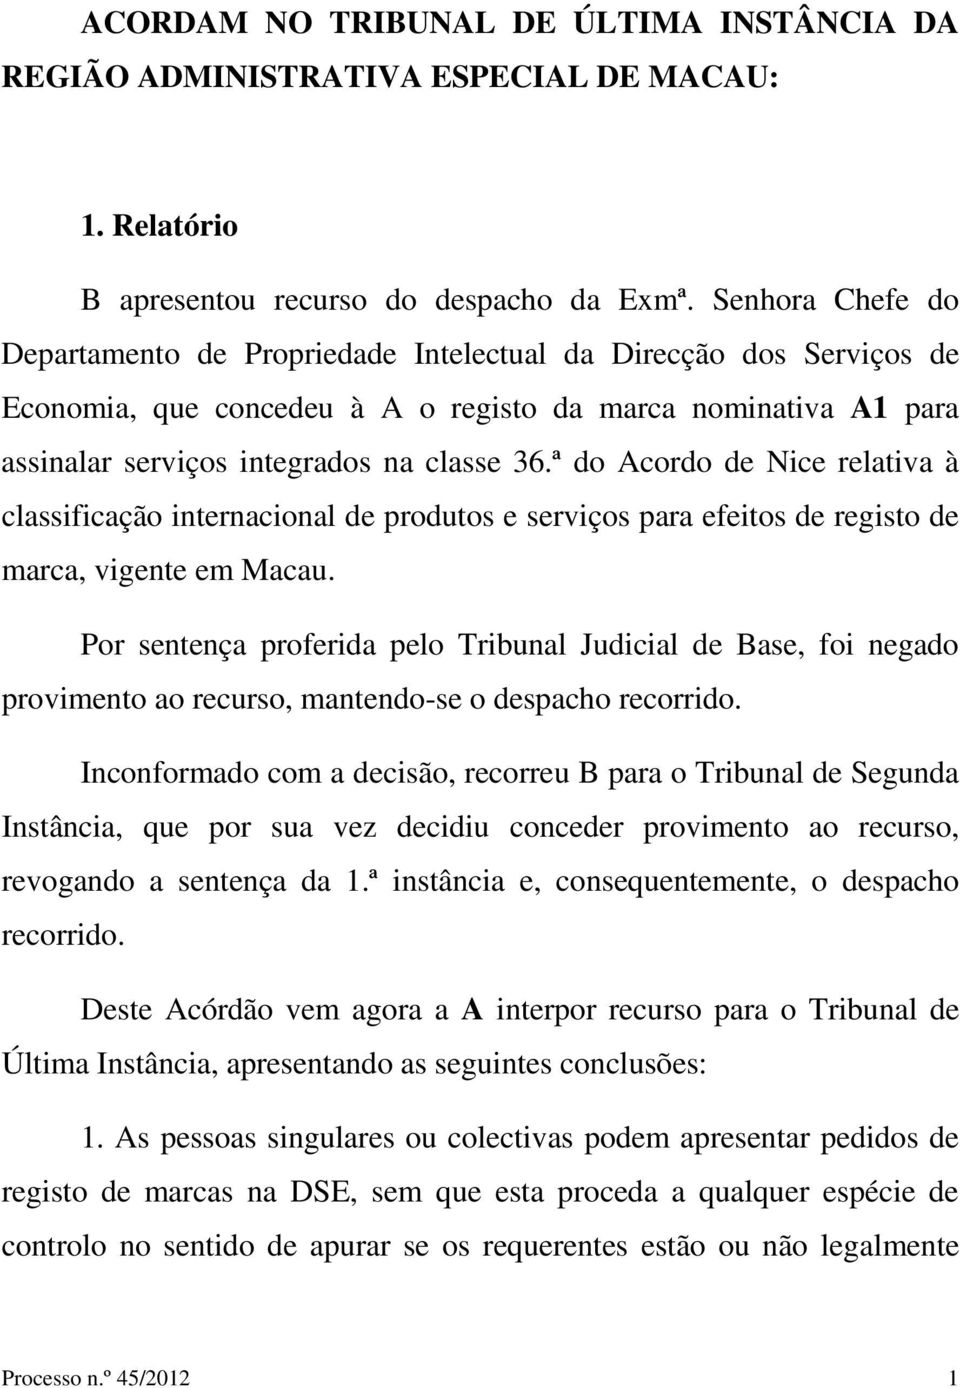 ª do Acordo de Nice relativa à classificação internacional de produtos e serviços para efeitos de registo de marca, vigente em Macau.